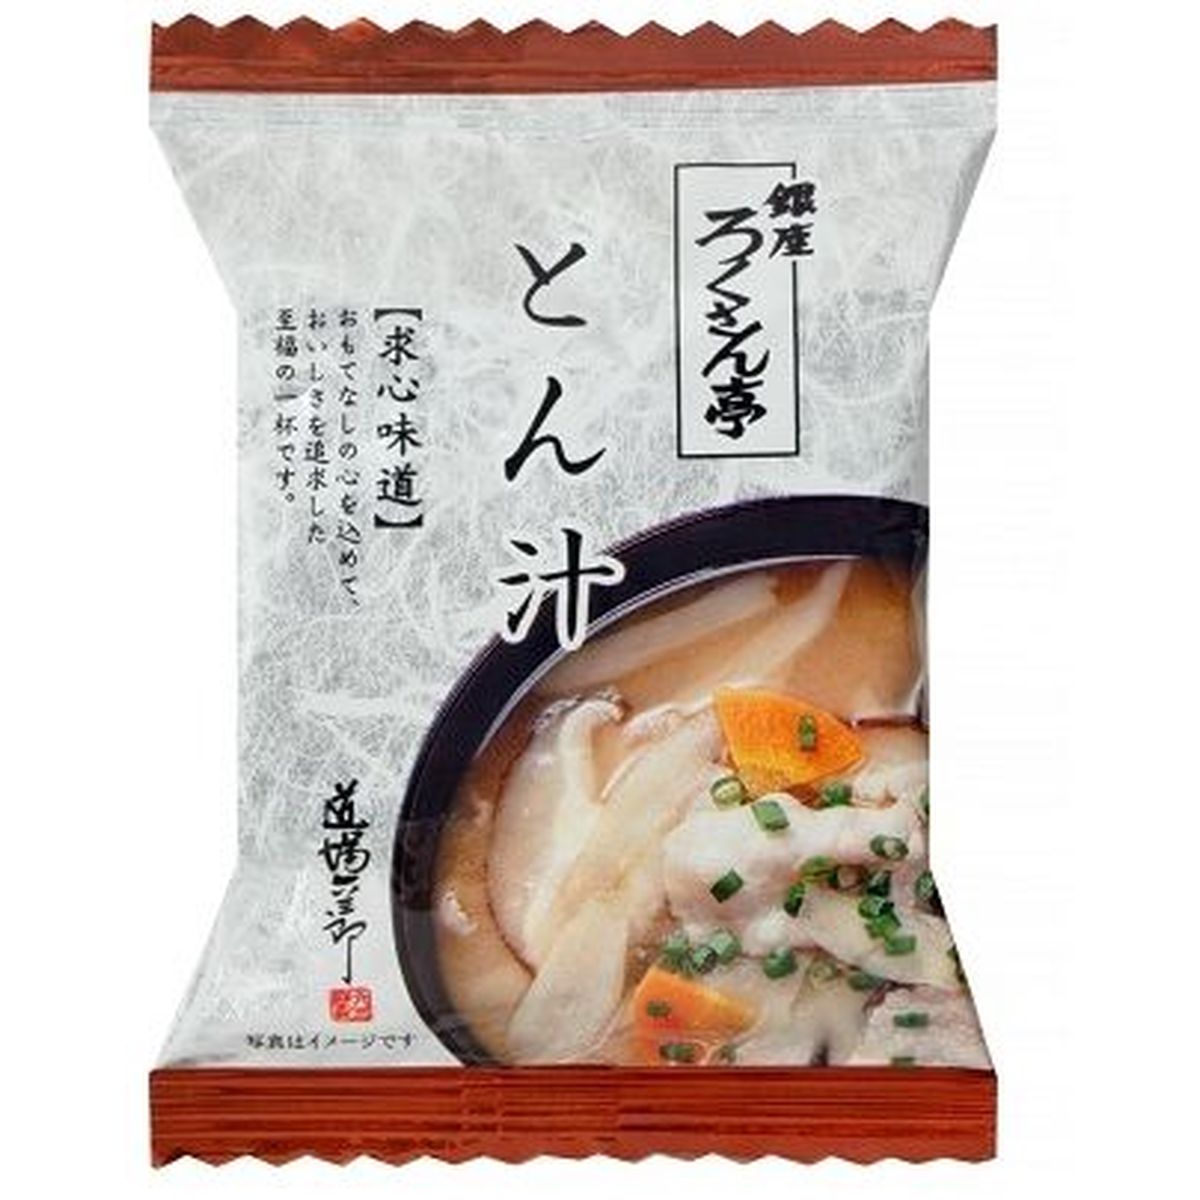 【10個入リ】トップ卵 ロクサン亭 トン汁 12g